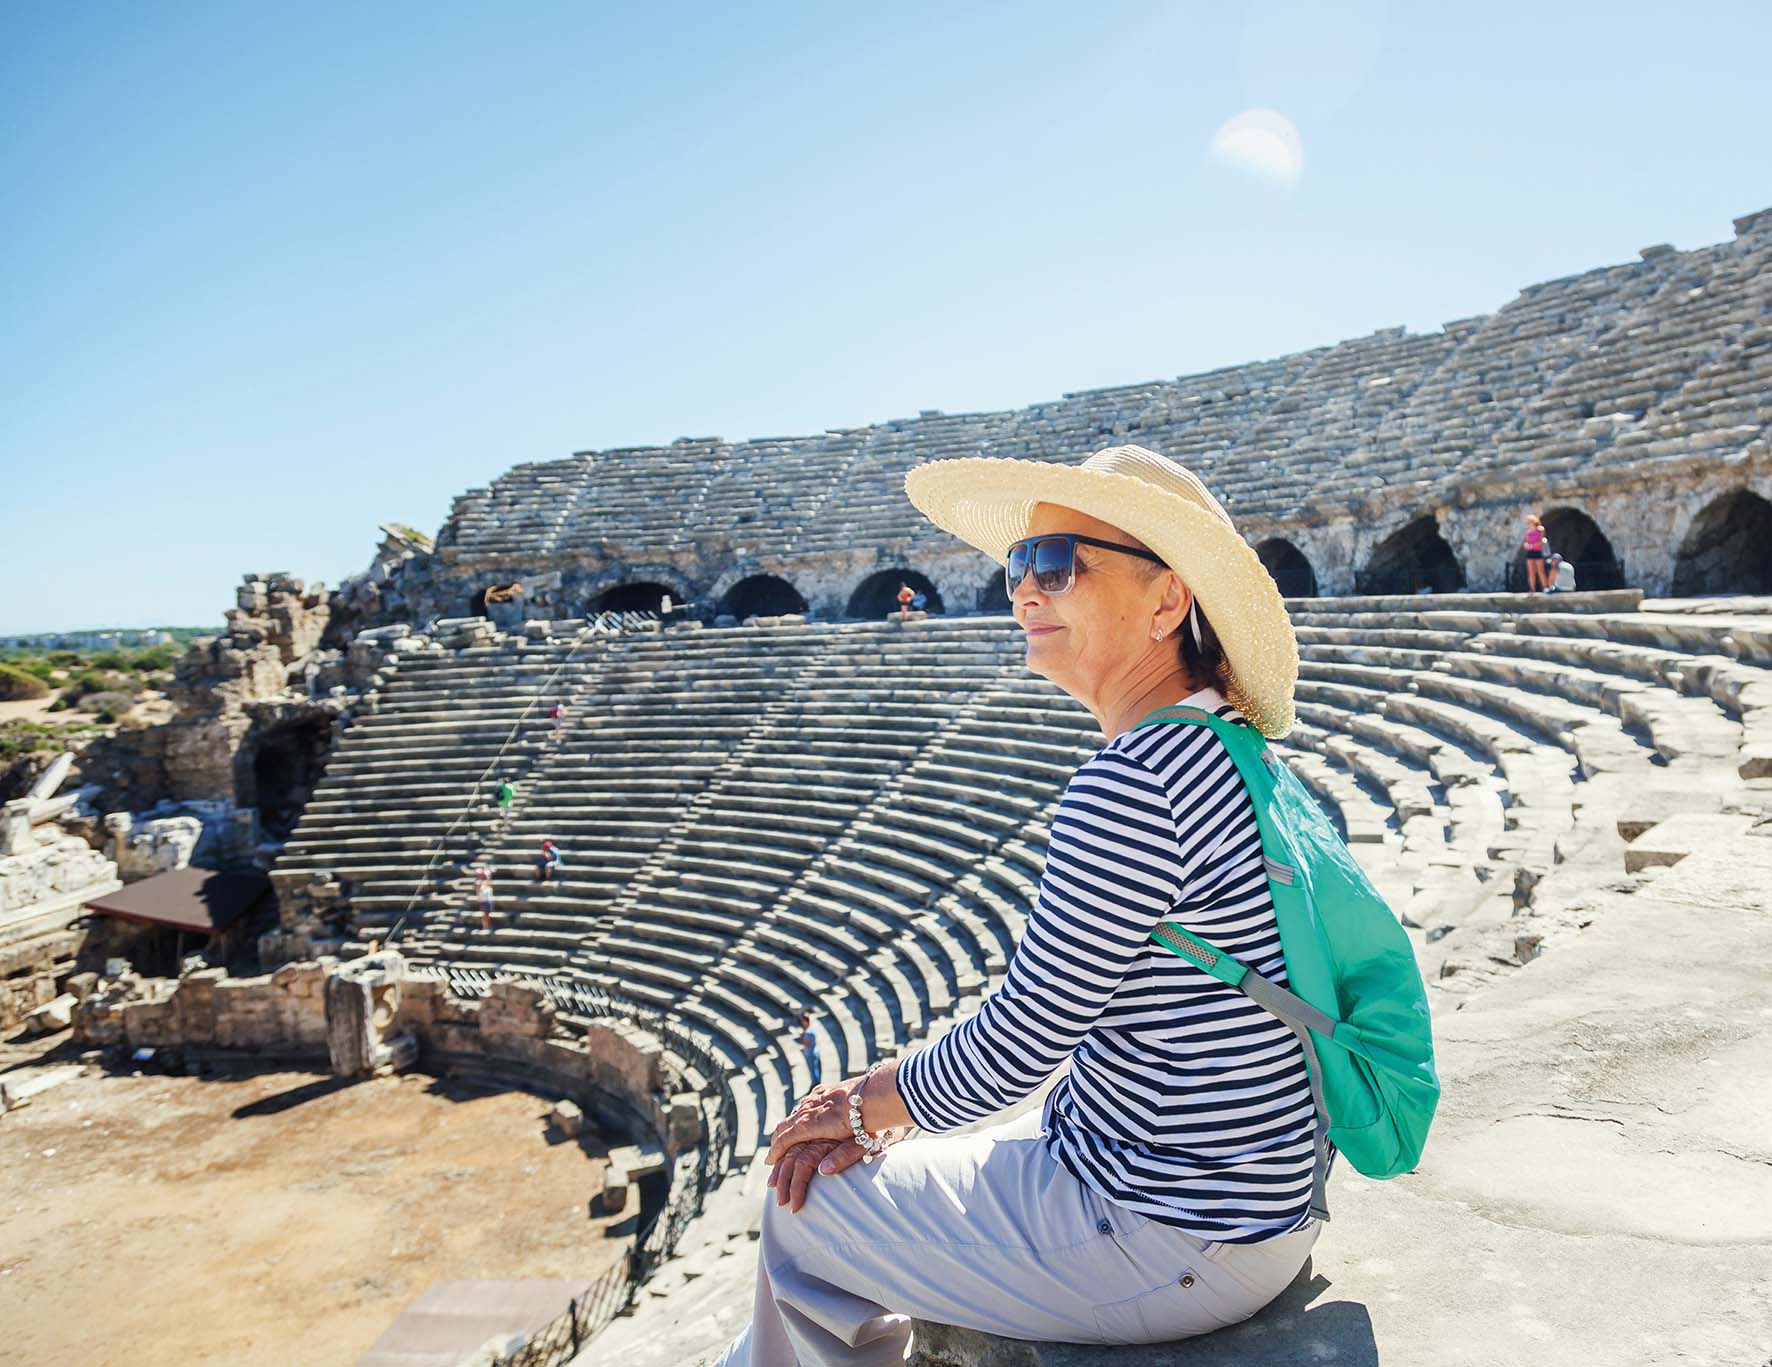 An older woman visiting a Greek amphitheatre